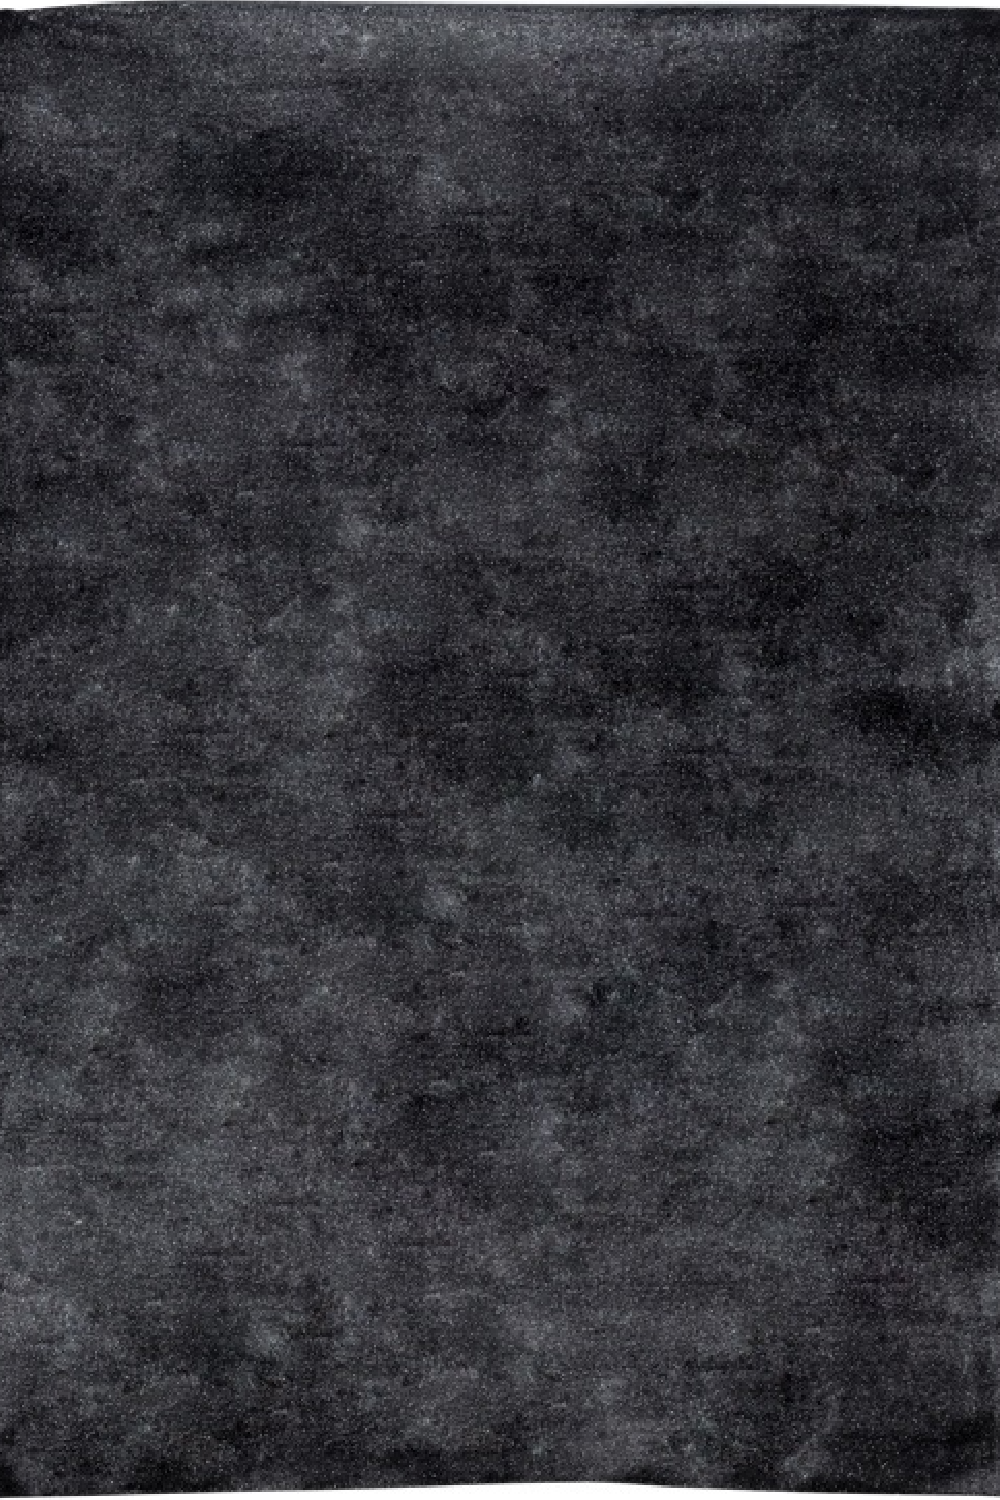 Black Modern Carpet | OROA Charcoal | Oroa.com